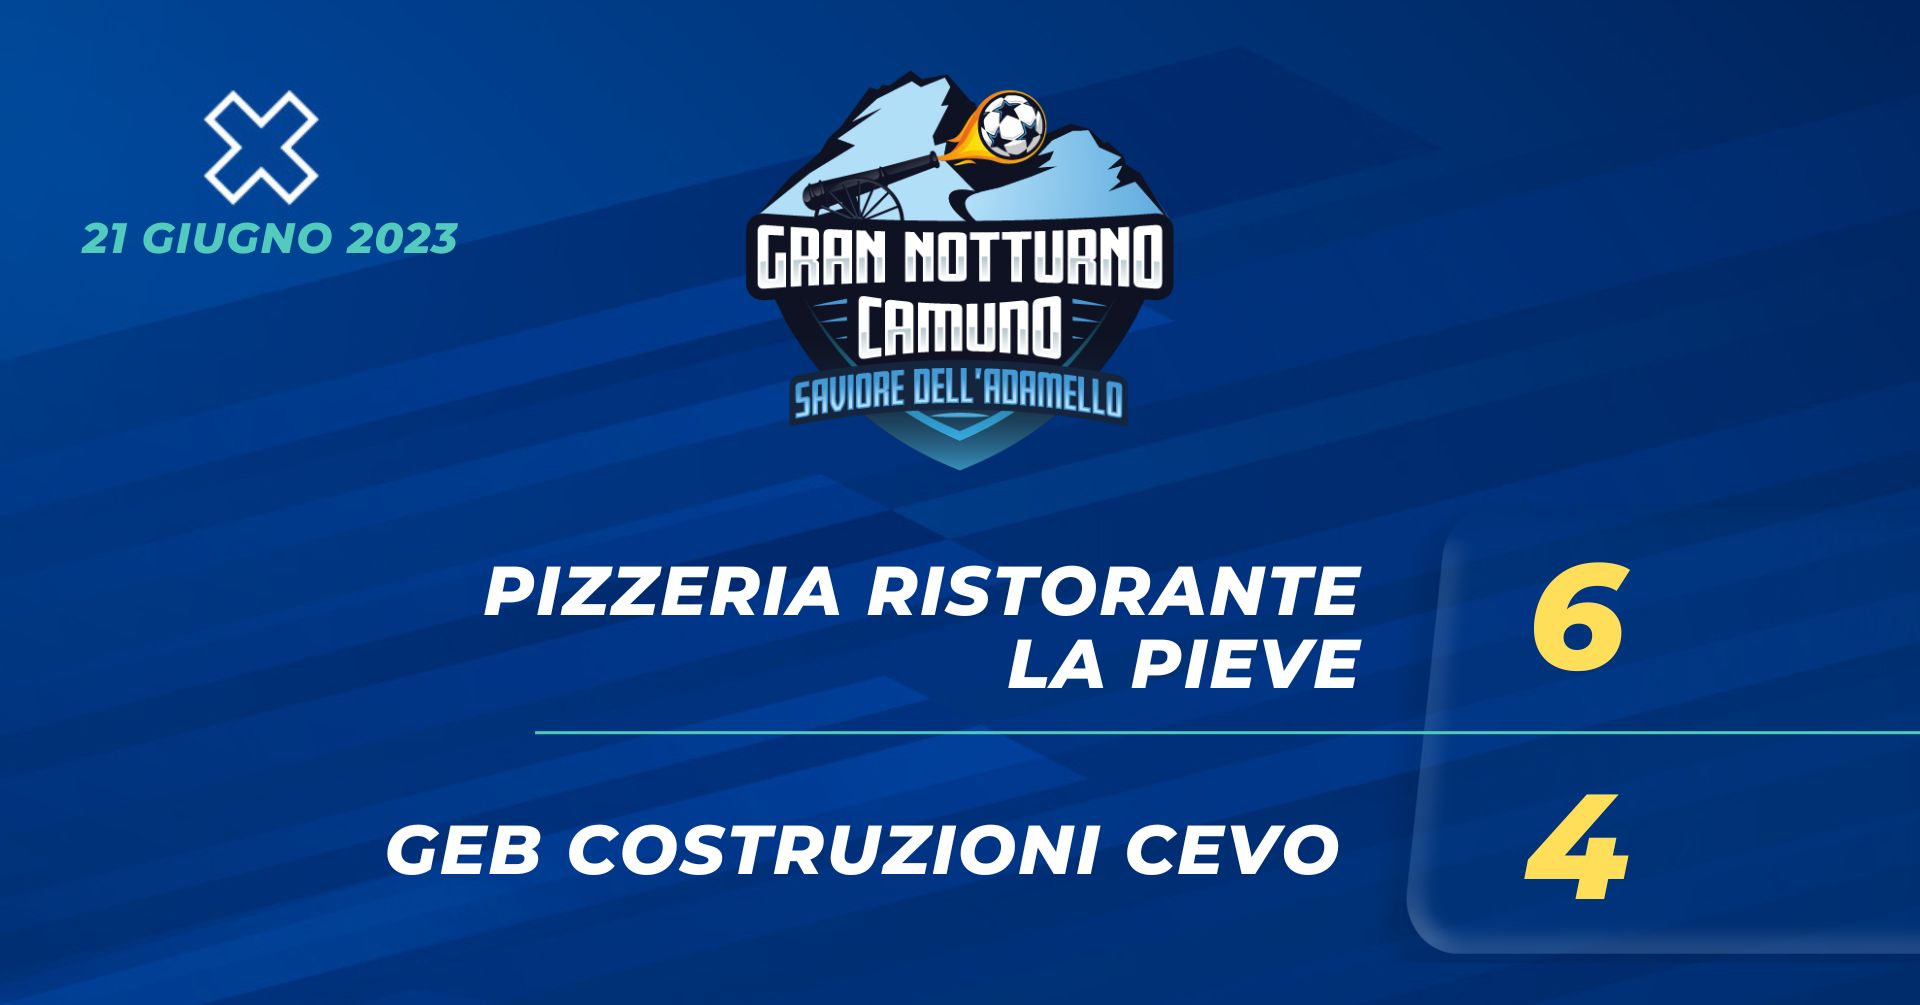 Pizzeria Ristorante La Pieve - GEB COSTRUZIONI CEVO 6 - 4